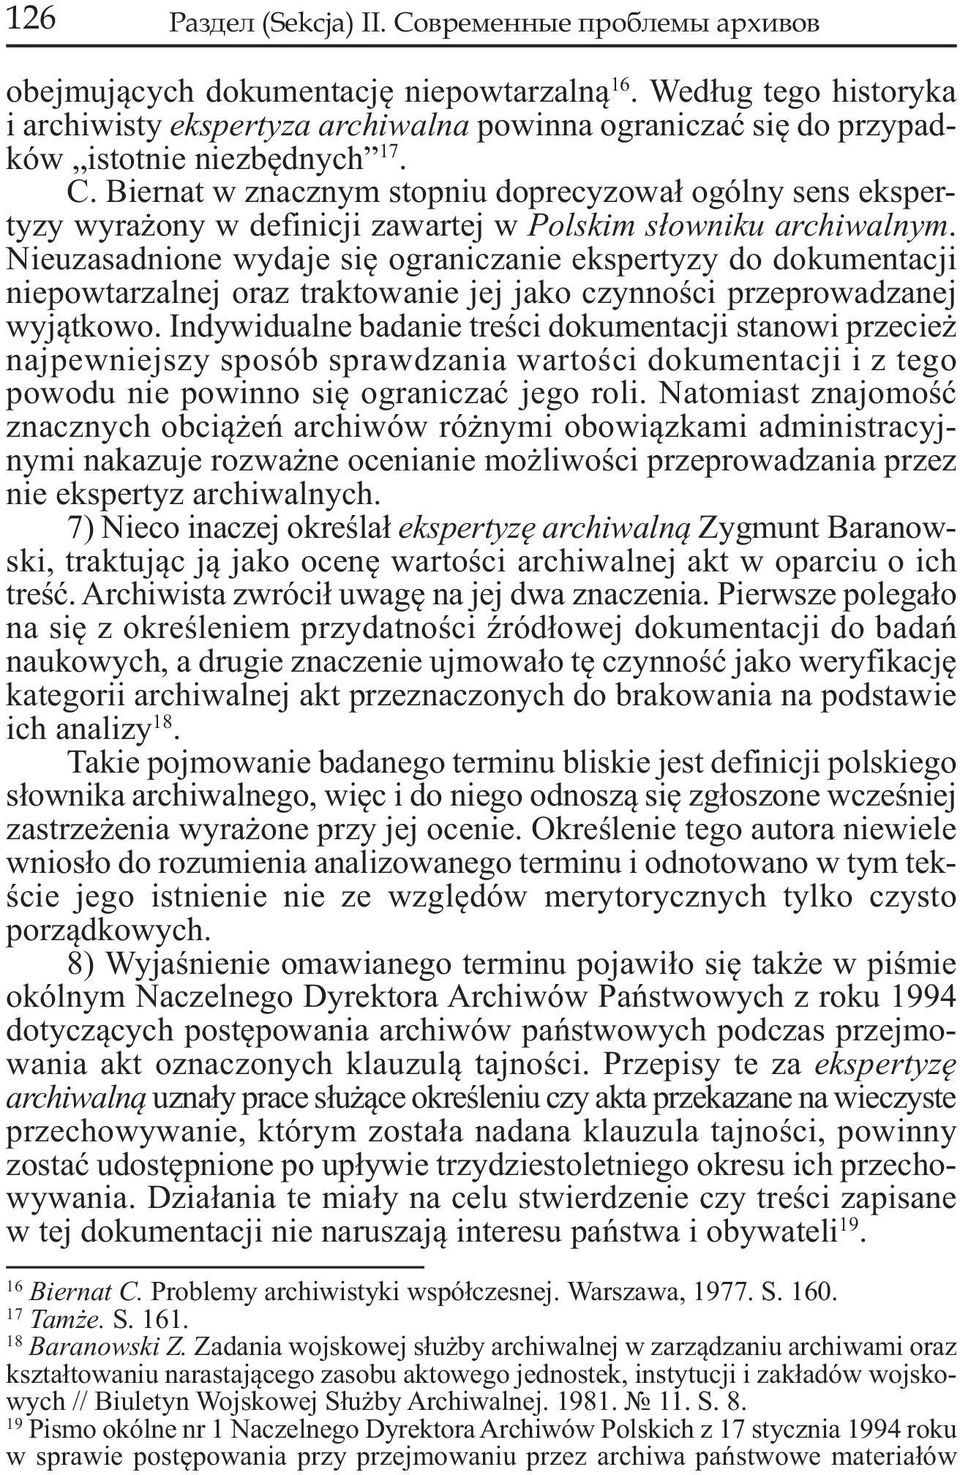 Biernat w znacznym stopniu doprecyzował ogólny sens ekspertyzy wyrażony w definicji zawartej w Polskim słowniku archiwalnym.